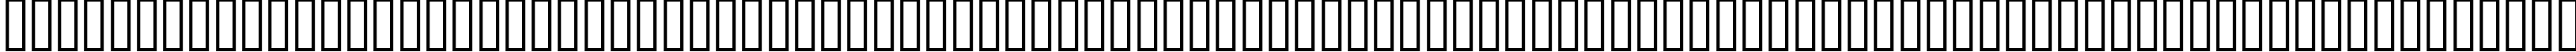 Пример написания русского алфавита шрифтом ELEGANCE